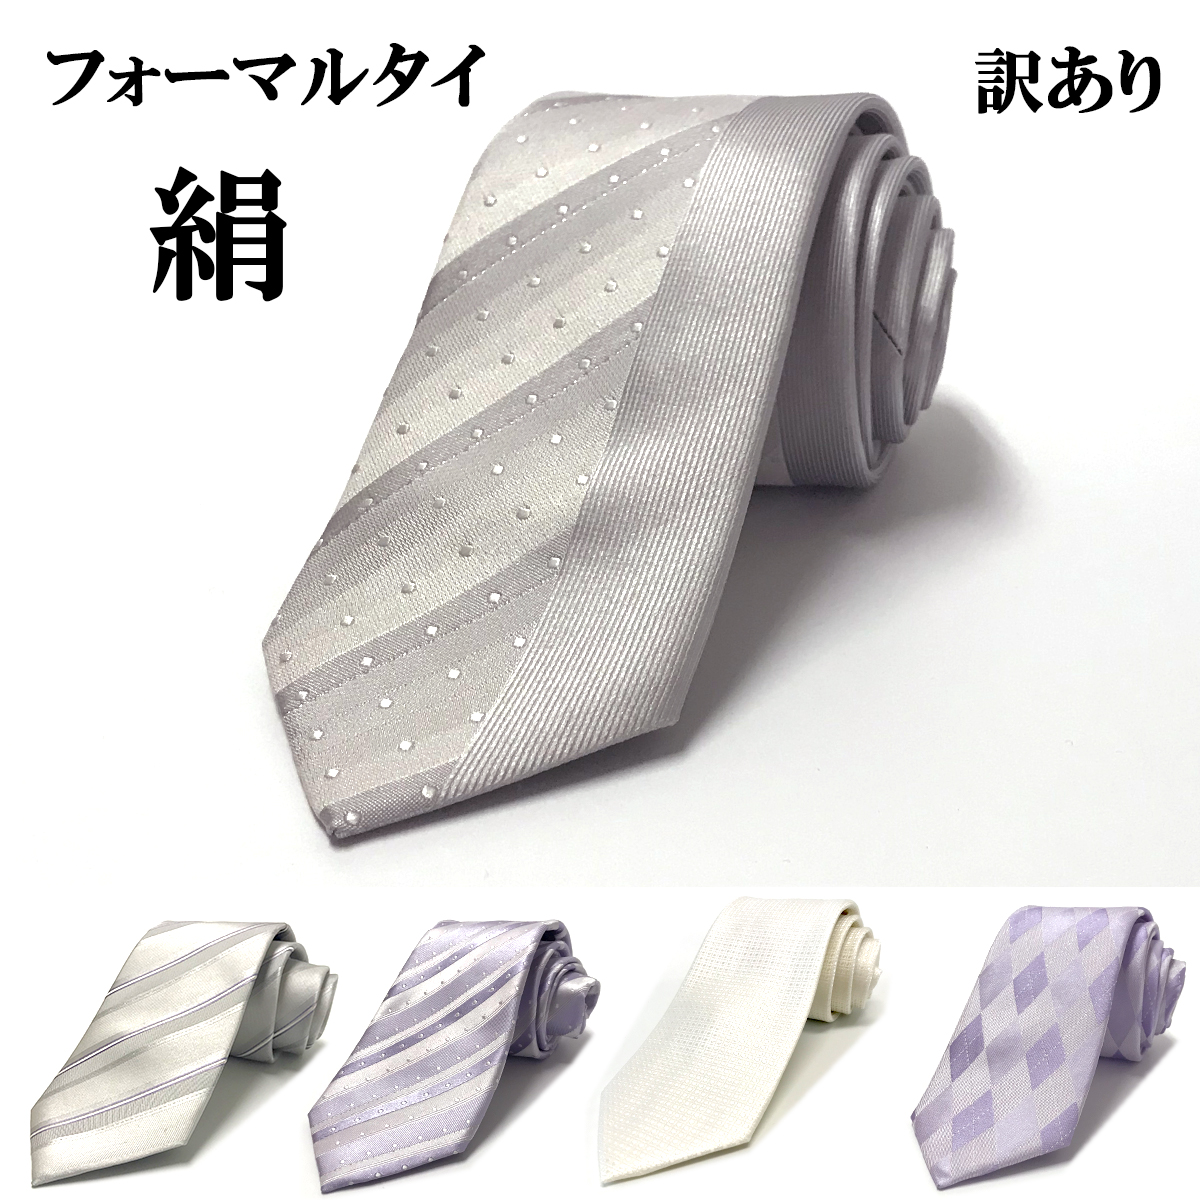  галстук есть перевод свадьба ... party белый серый одноцветный почтовая доставка бесплатная доставка 